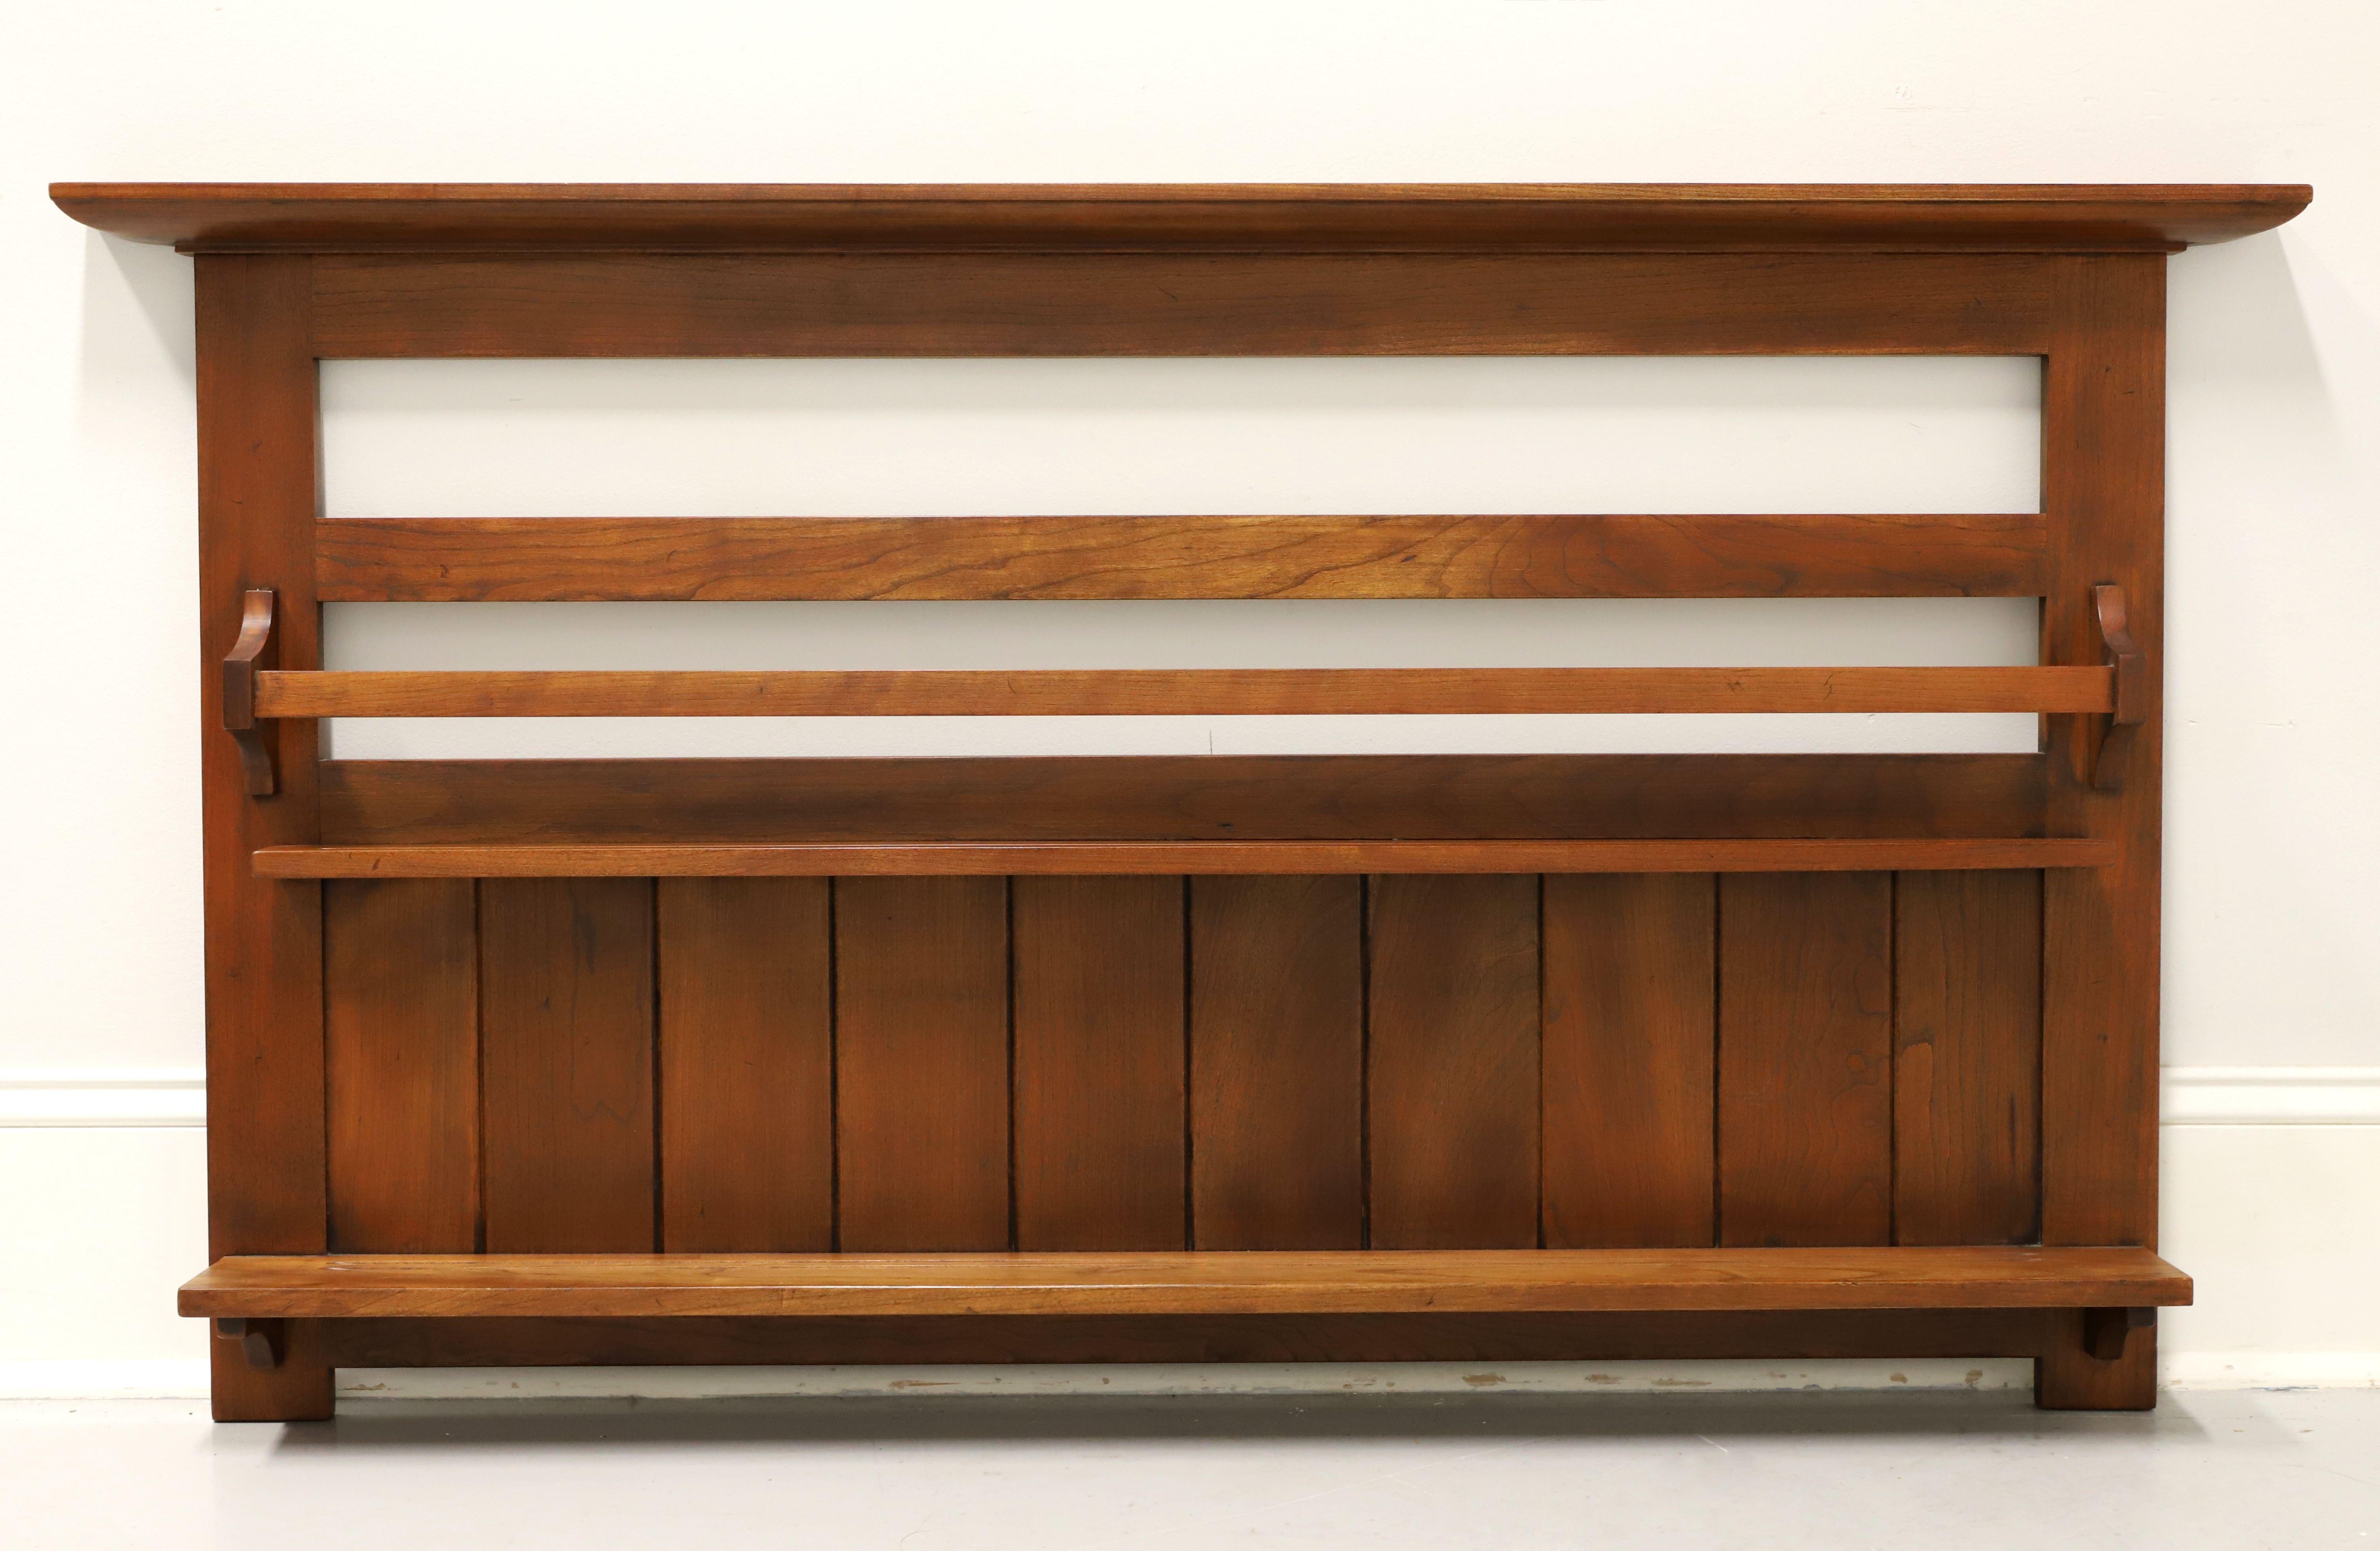 Ein hängendes Tellerregal im Missionsstil von Stickley Furniture aus ihrer Mission Collection'S. Massives Kirschholz, Kronenleisten an der Oberseite, oberer Tellerboden mit Rillen und einer Frontplatte zum Befestigen von Tellern, unterer offener